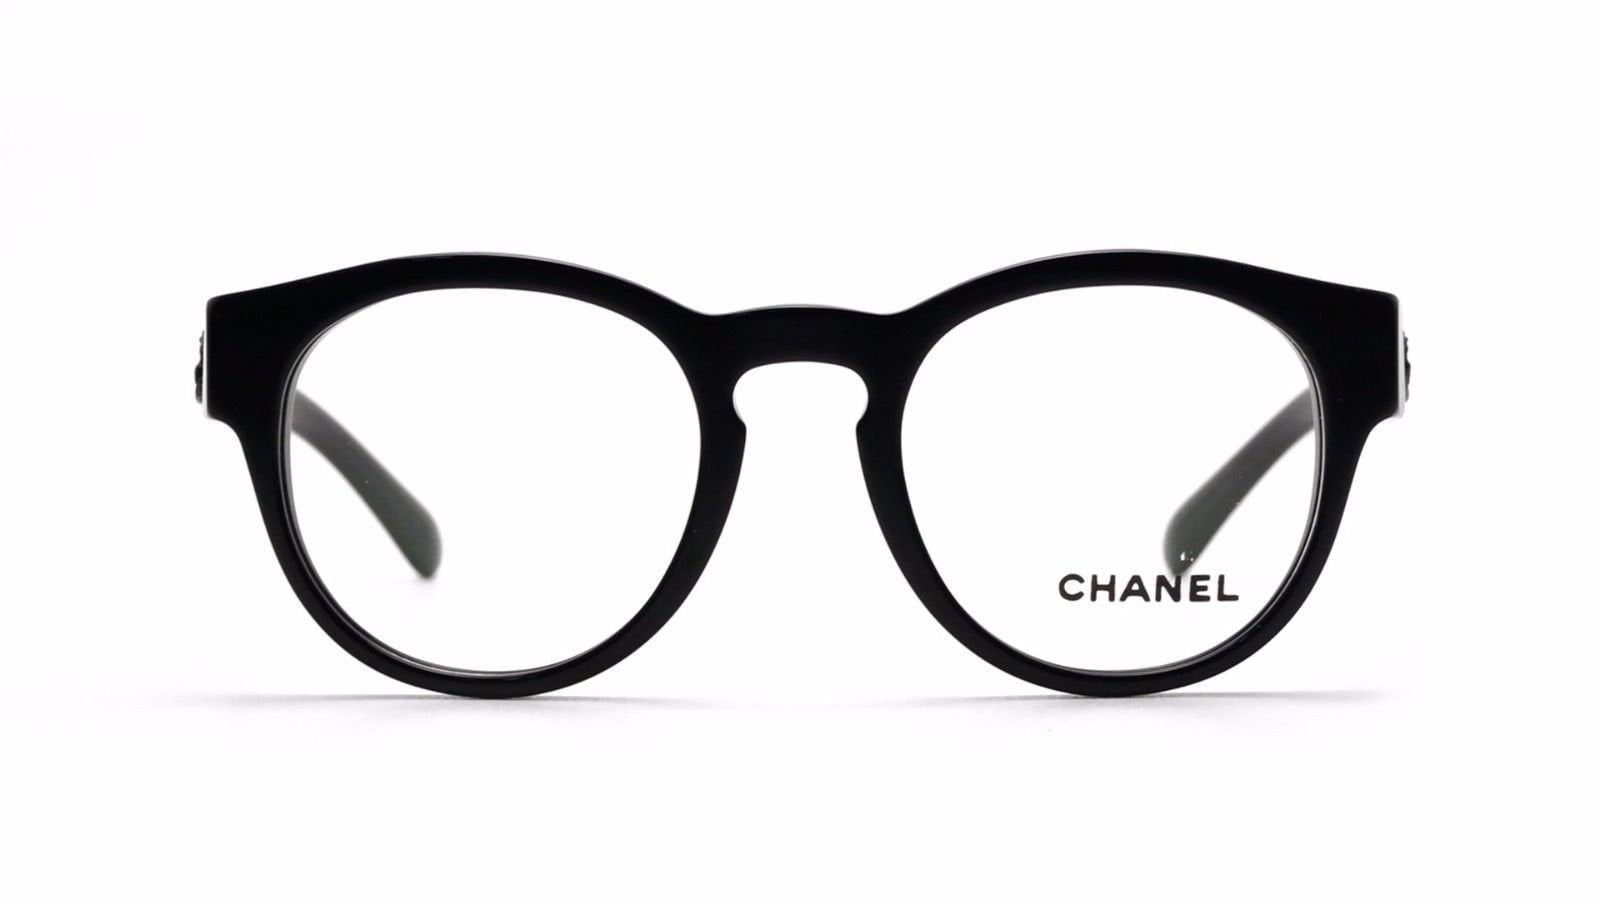 CHANEL Eyeglass Frames c.3432 501 Pantos Black Glasses 47 mm Case Cloth NIB  $380